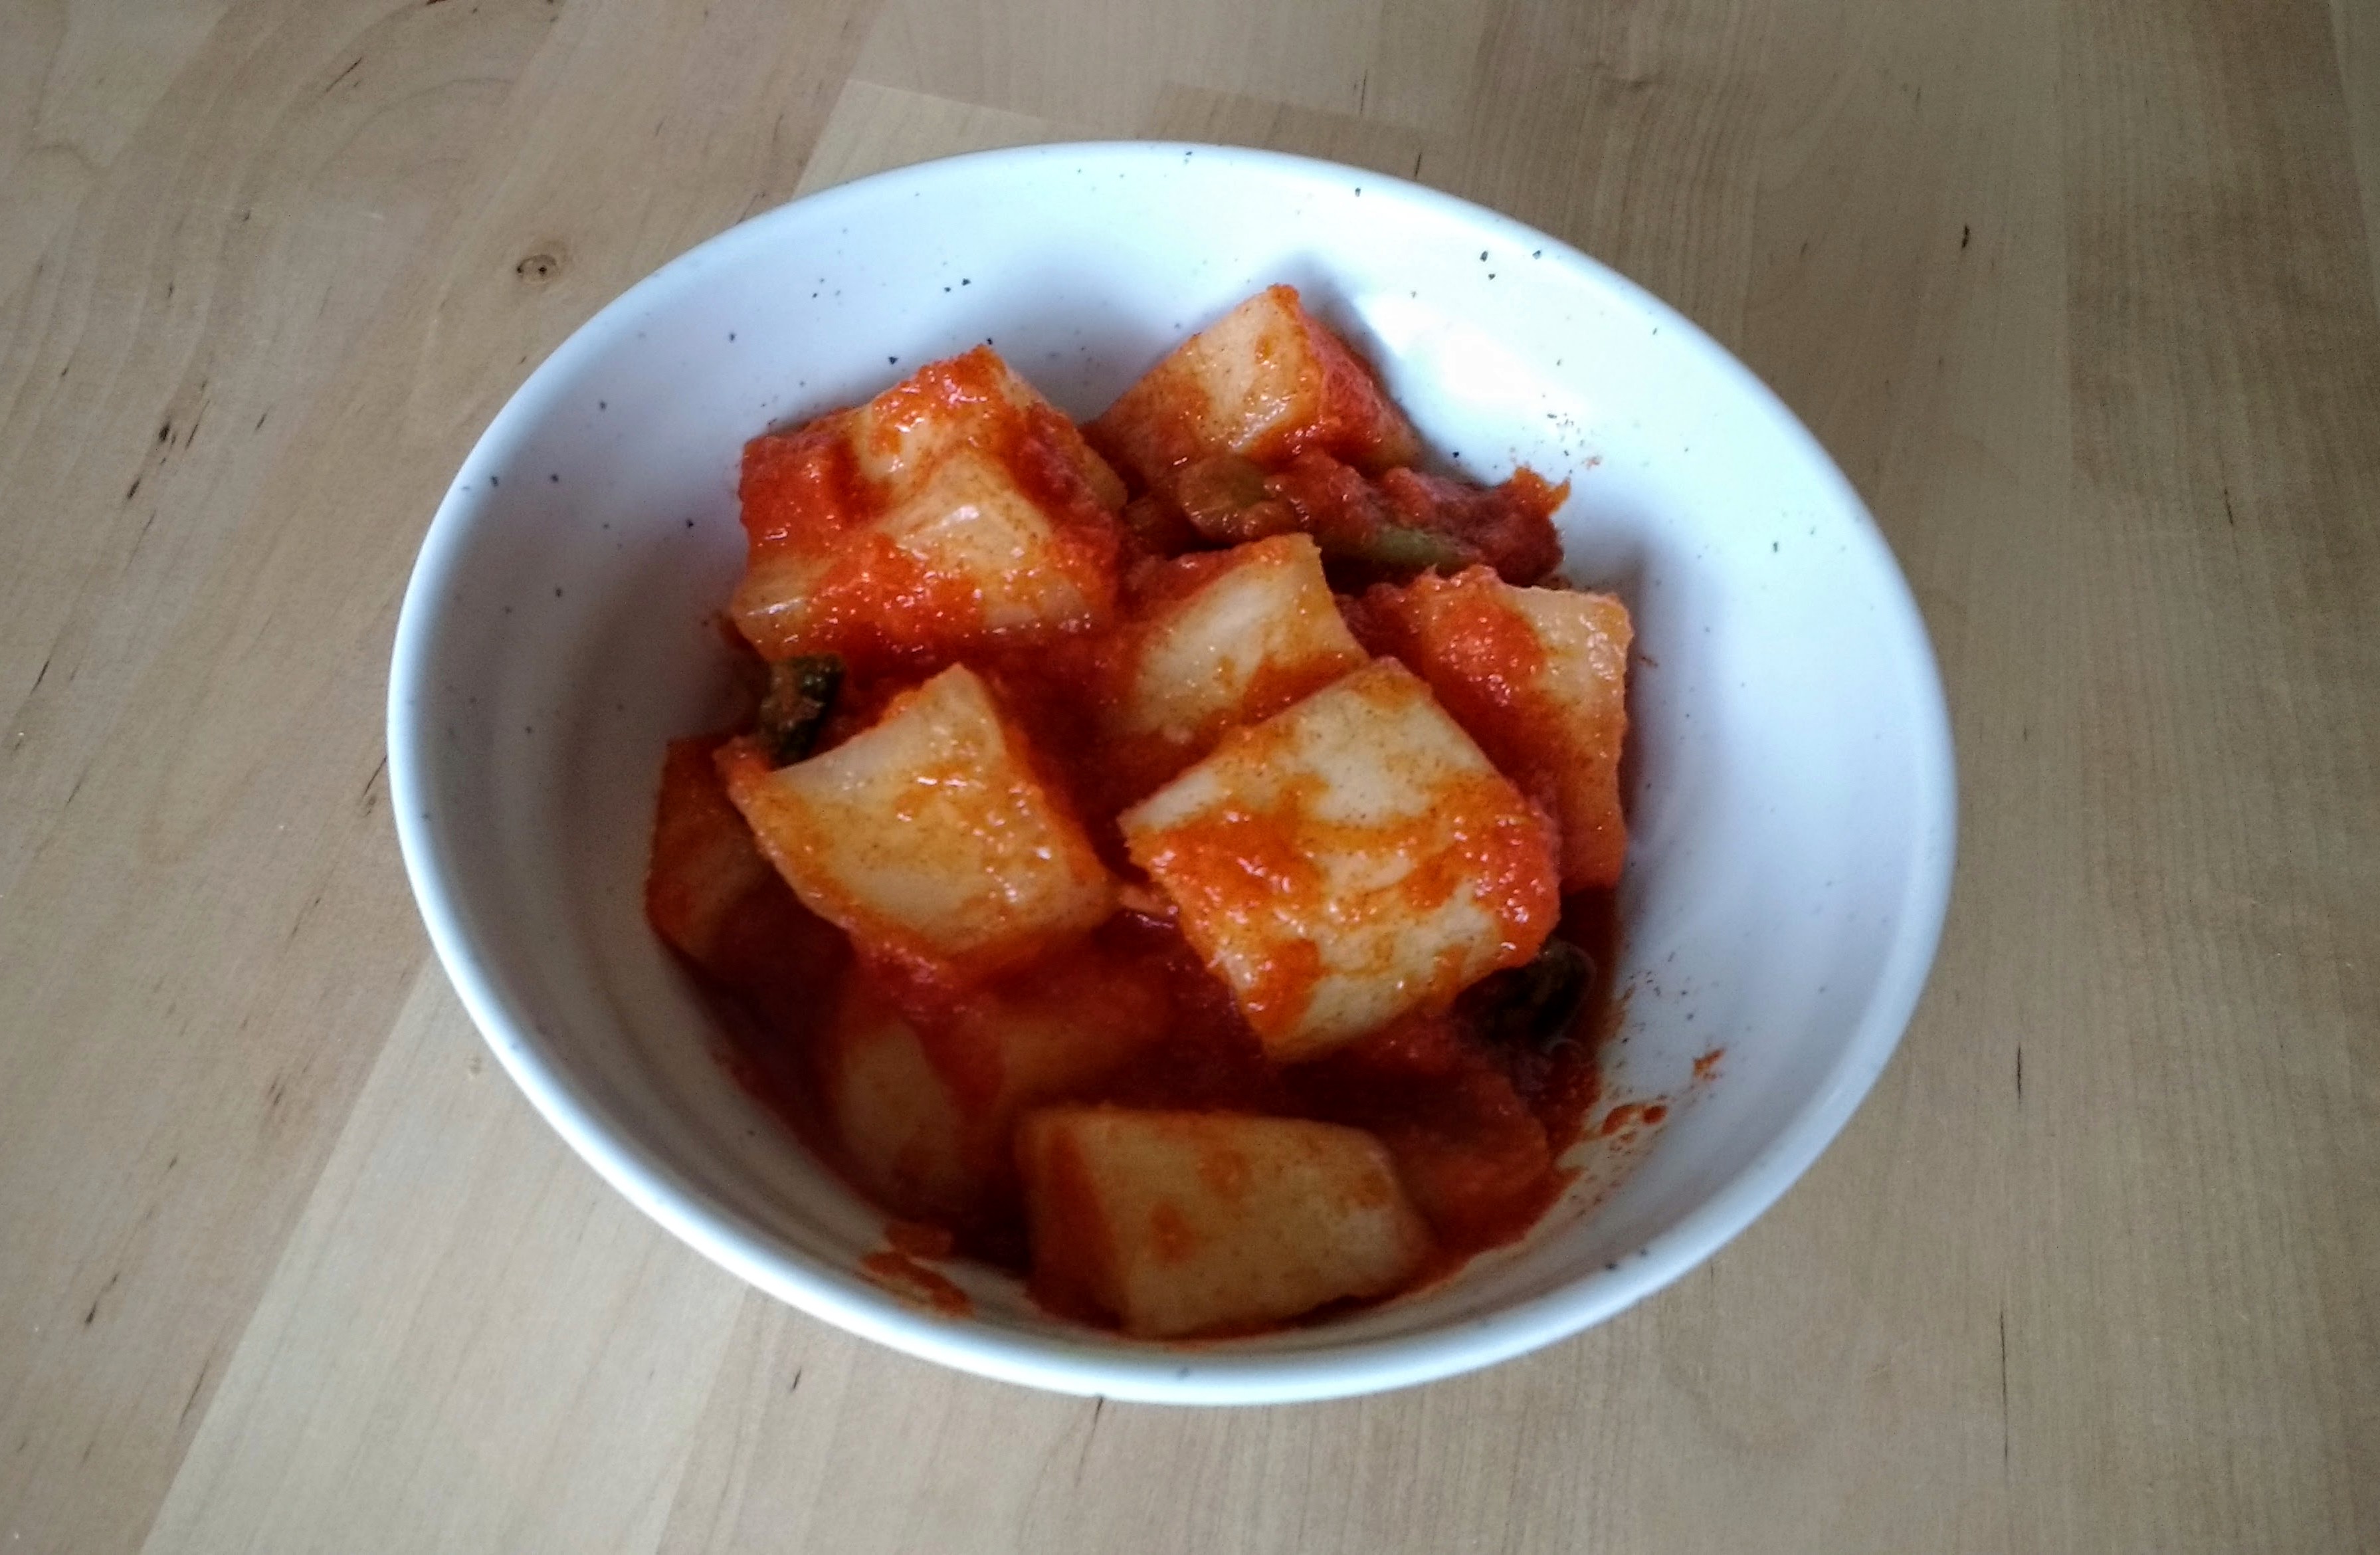 Kkakdugi, radish kimchi